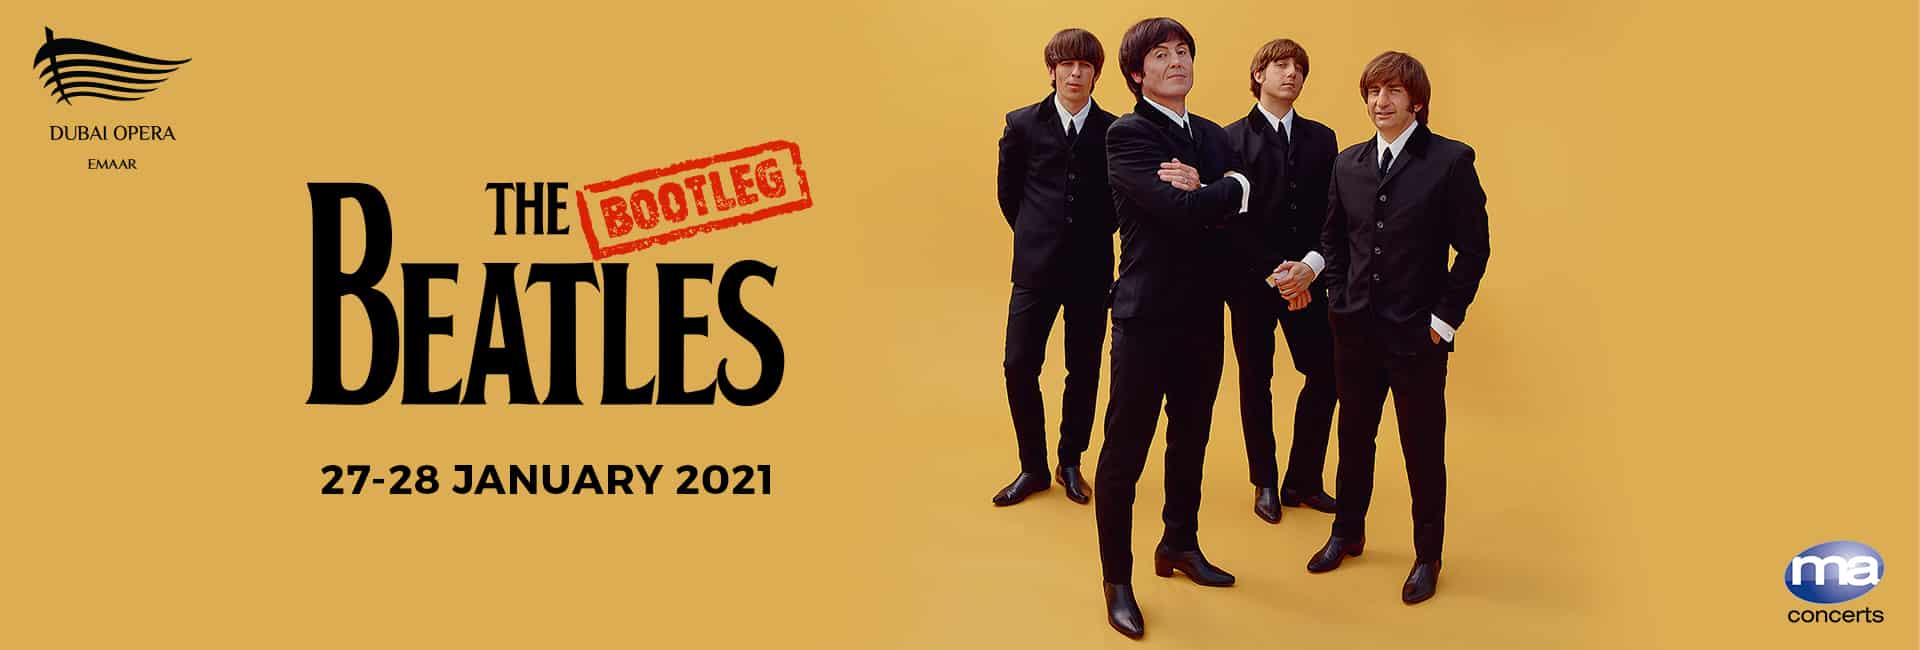 The Bootleg Beatles - Coming Soon in UAE